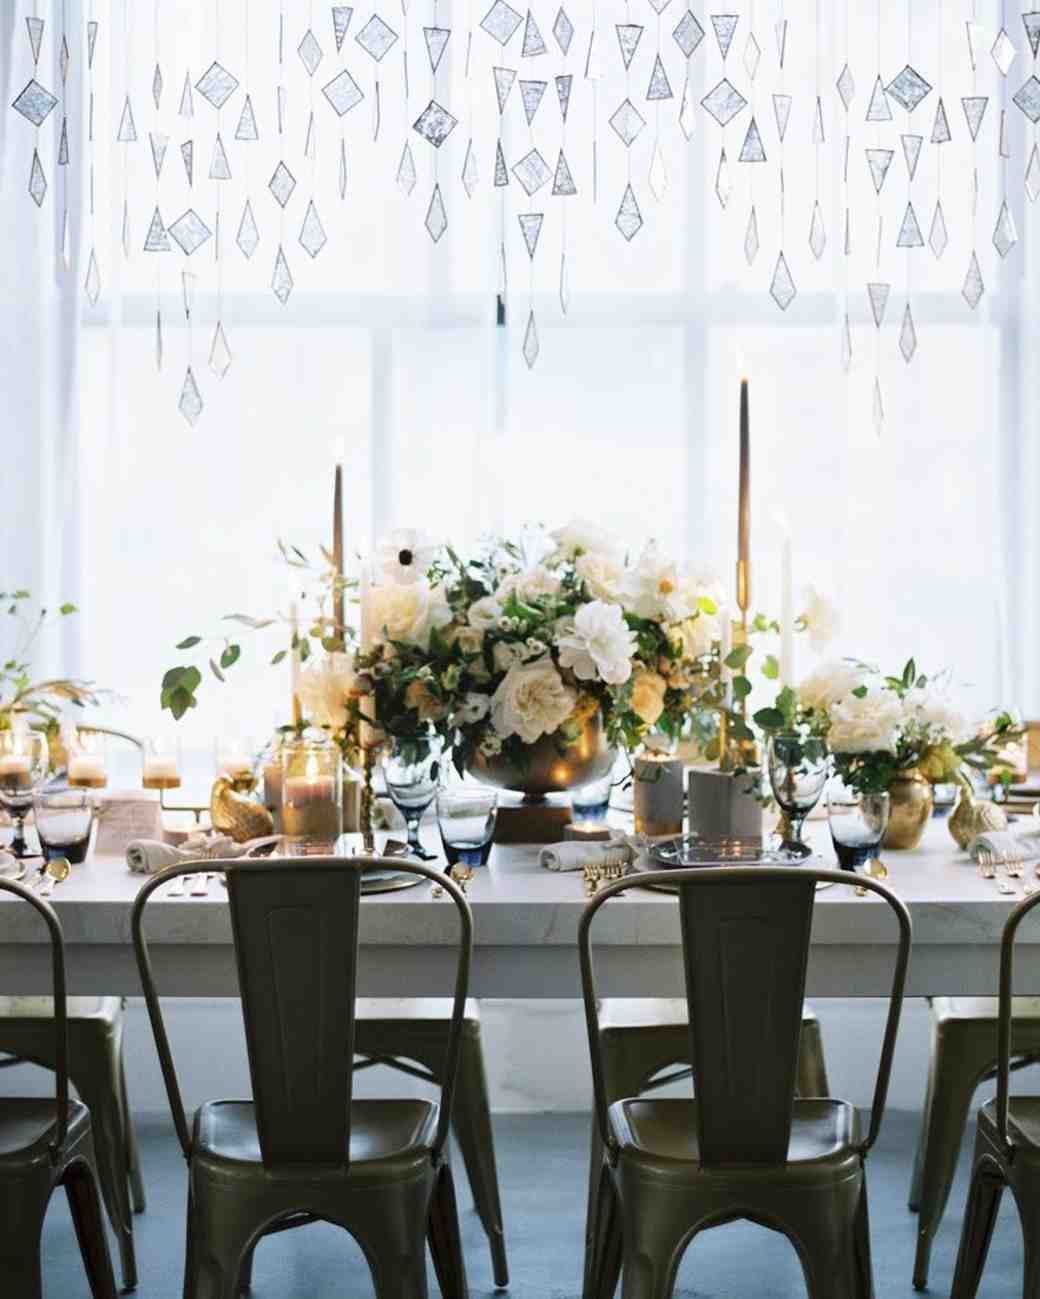 28 Ideas For Sitting Pretty At Your Head Table Martha Stewart Weddings